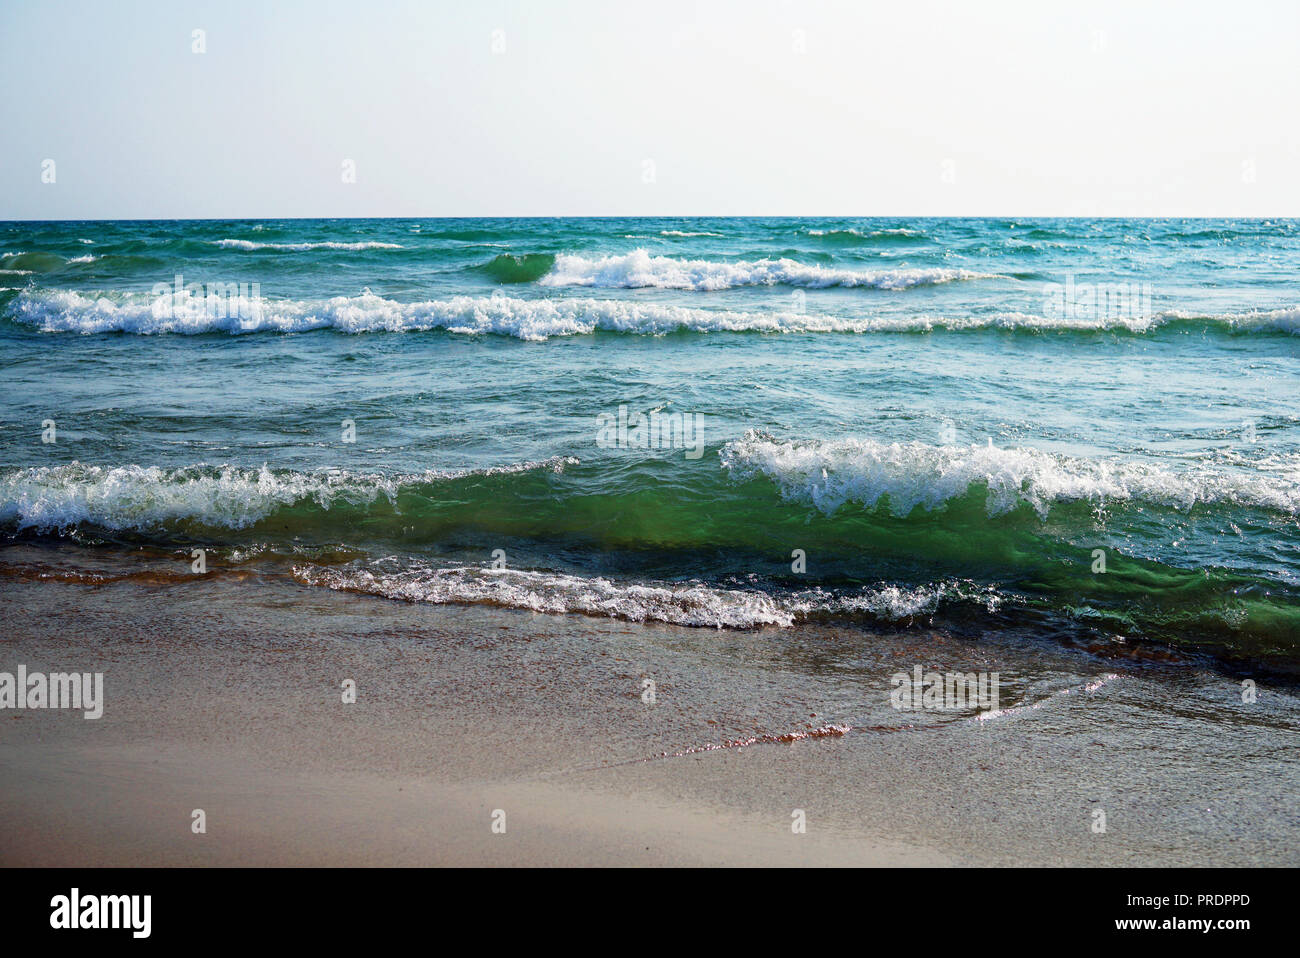 Mer Déchaînée sur un beau jour de vent. De grosses vagues avec mousse blanche sur la crête s'élever au-dessus de la surface de l'eau et de courir vers la rive. Belles chambres lumineuses g Banque D'Images